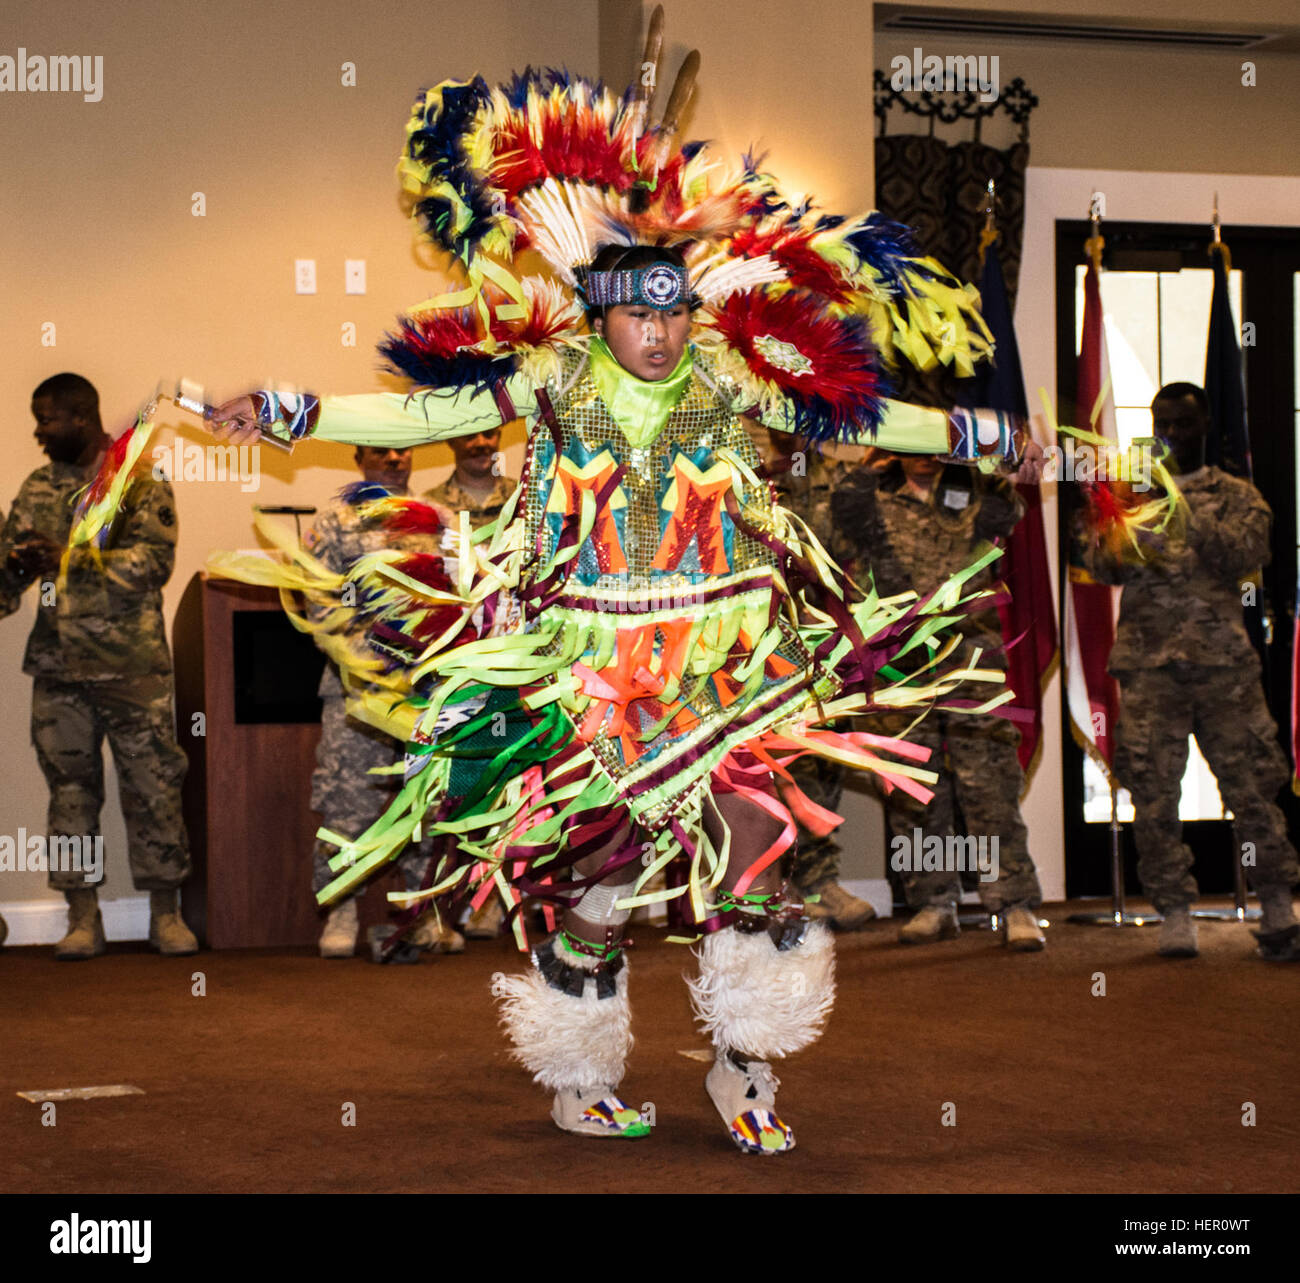 FORT IRWIN, Kalifornien-Baac Garcia, ein Mitglied des Stammes der Tohono O' odham und Red Boy Native Dance Troupe, durchgeführt einen traditionellen Tanz aus seiner Kultur der Ureinwohner auf die National Training Center und Fort Irwin National Native American Heritage Month Feier, 16. November 2016.   Der Tohono O' odham setzte sich in Bewegung Richtung Norden fast 300 Jahre Agoand befinden sich nun in erster Linie in der Sonora-Wüste von Süd-Arizona und nordwestlichen Mexiko. (Foto: U.S. Army Pvt. Austin Anyzeski, 11th ACR) Die 11th Armored Cavalry Regiment und National Training Center feiern nationale Native American Heritage Month 161116-A Stockfoto